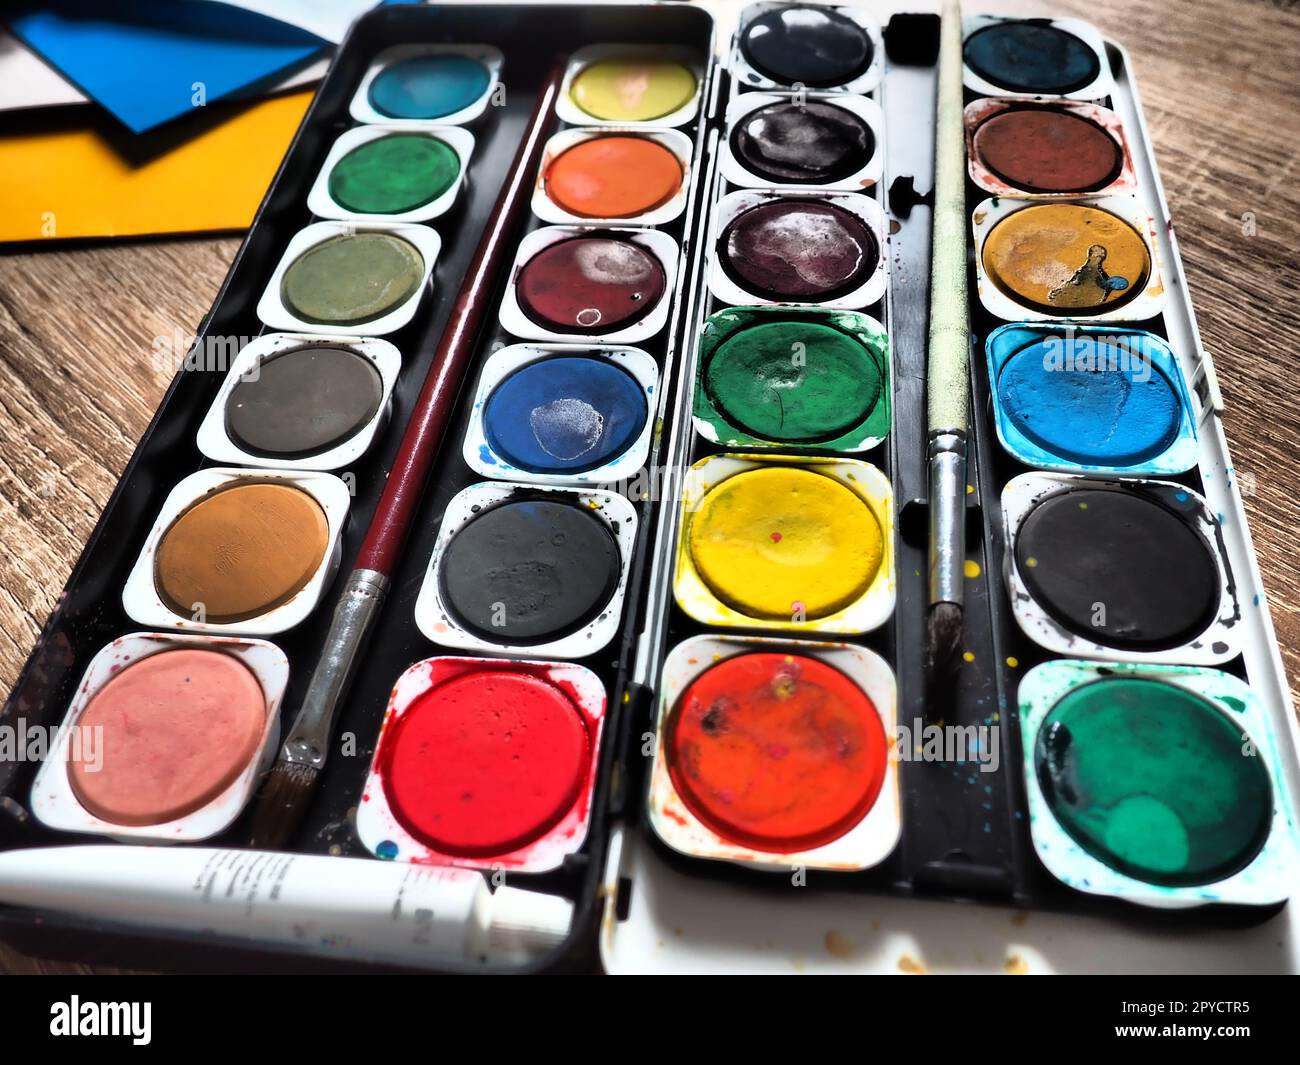 Ein Satz von Wasserfarben in verschiedenen Farben für das Zeichnen. Mehrfarbige runde Behälter mit heller Farbe. Werkzeuge für den Unterricht von Zeichnen und Arbeit. Farbiges Papier. Rot, Blau, Gelb, Grün. Stockfoto